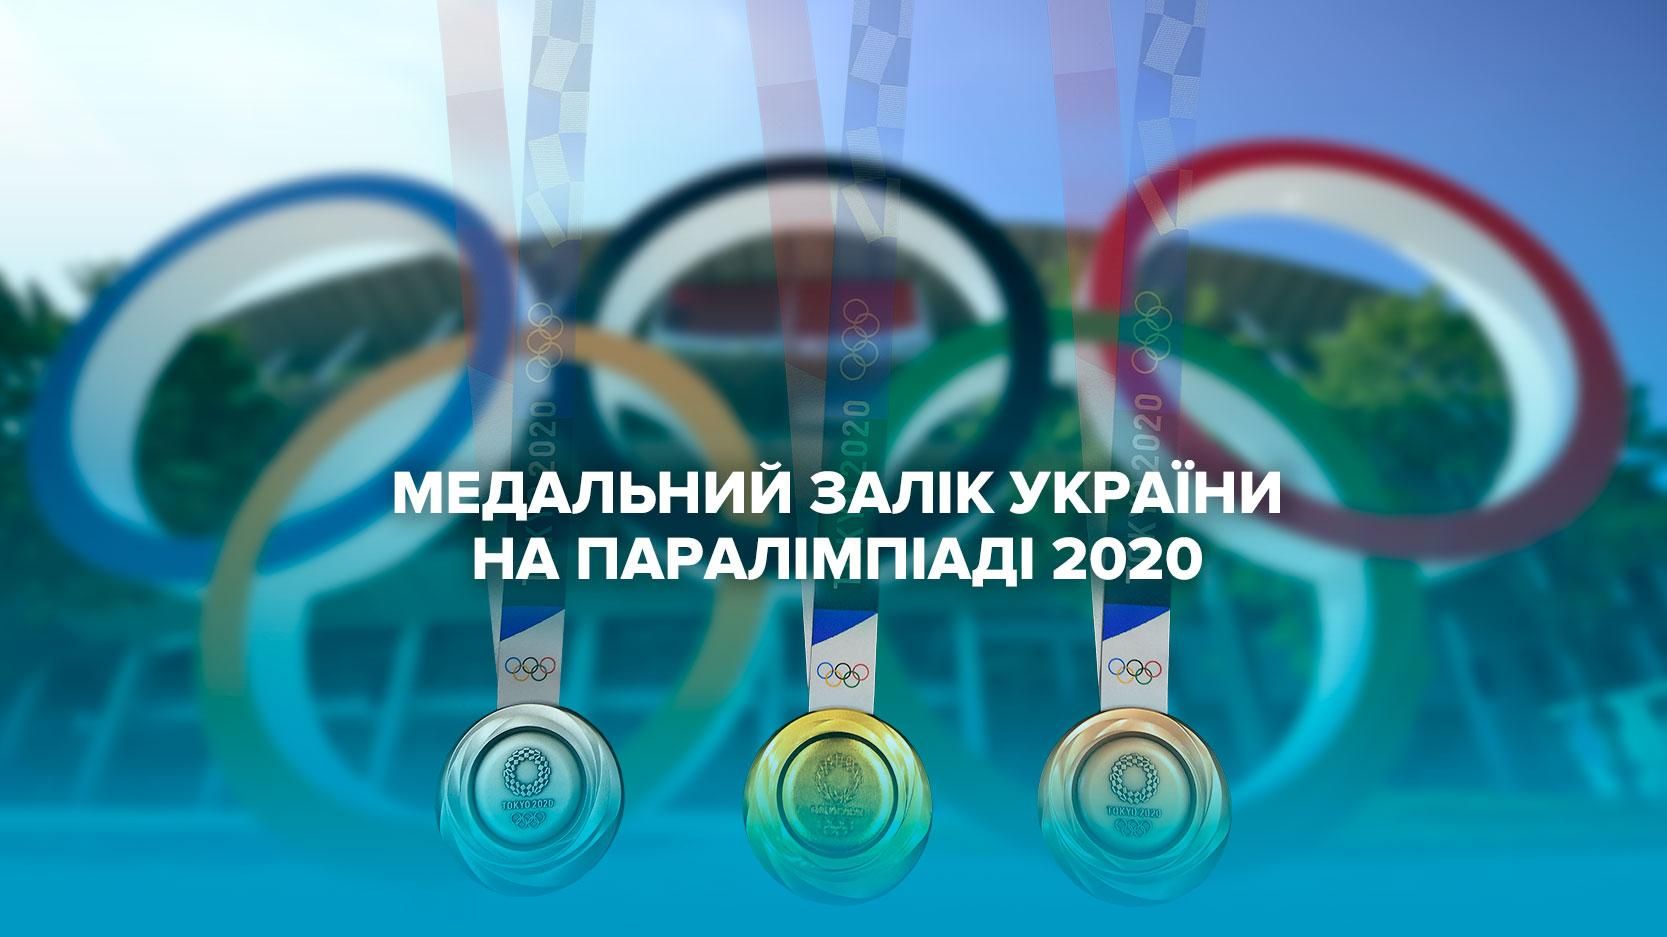 Паралимпиада 2020, Токио - медальный зачет Украины 